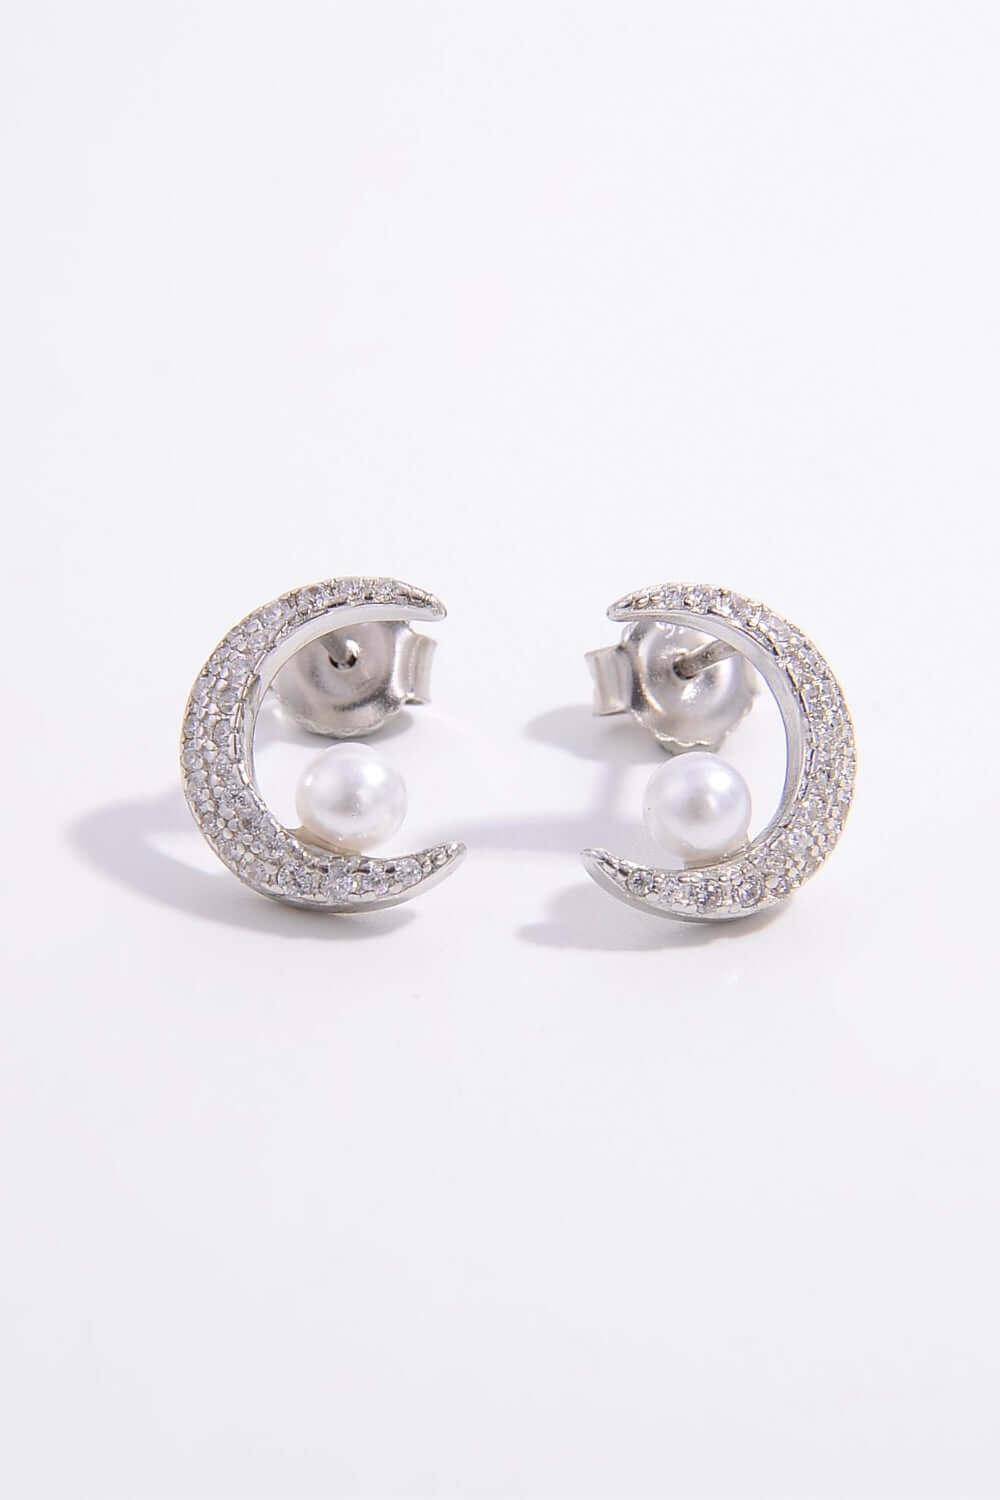 Pearl Sterling Silver Zircon Moon Shape Earrings - Samslivos